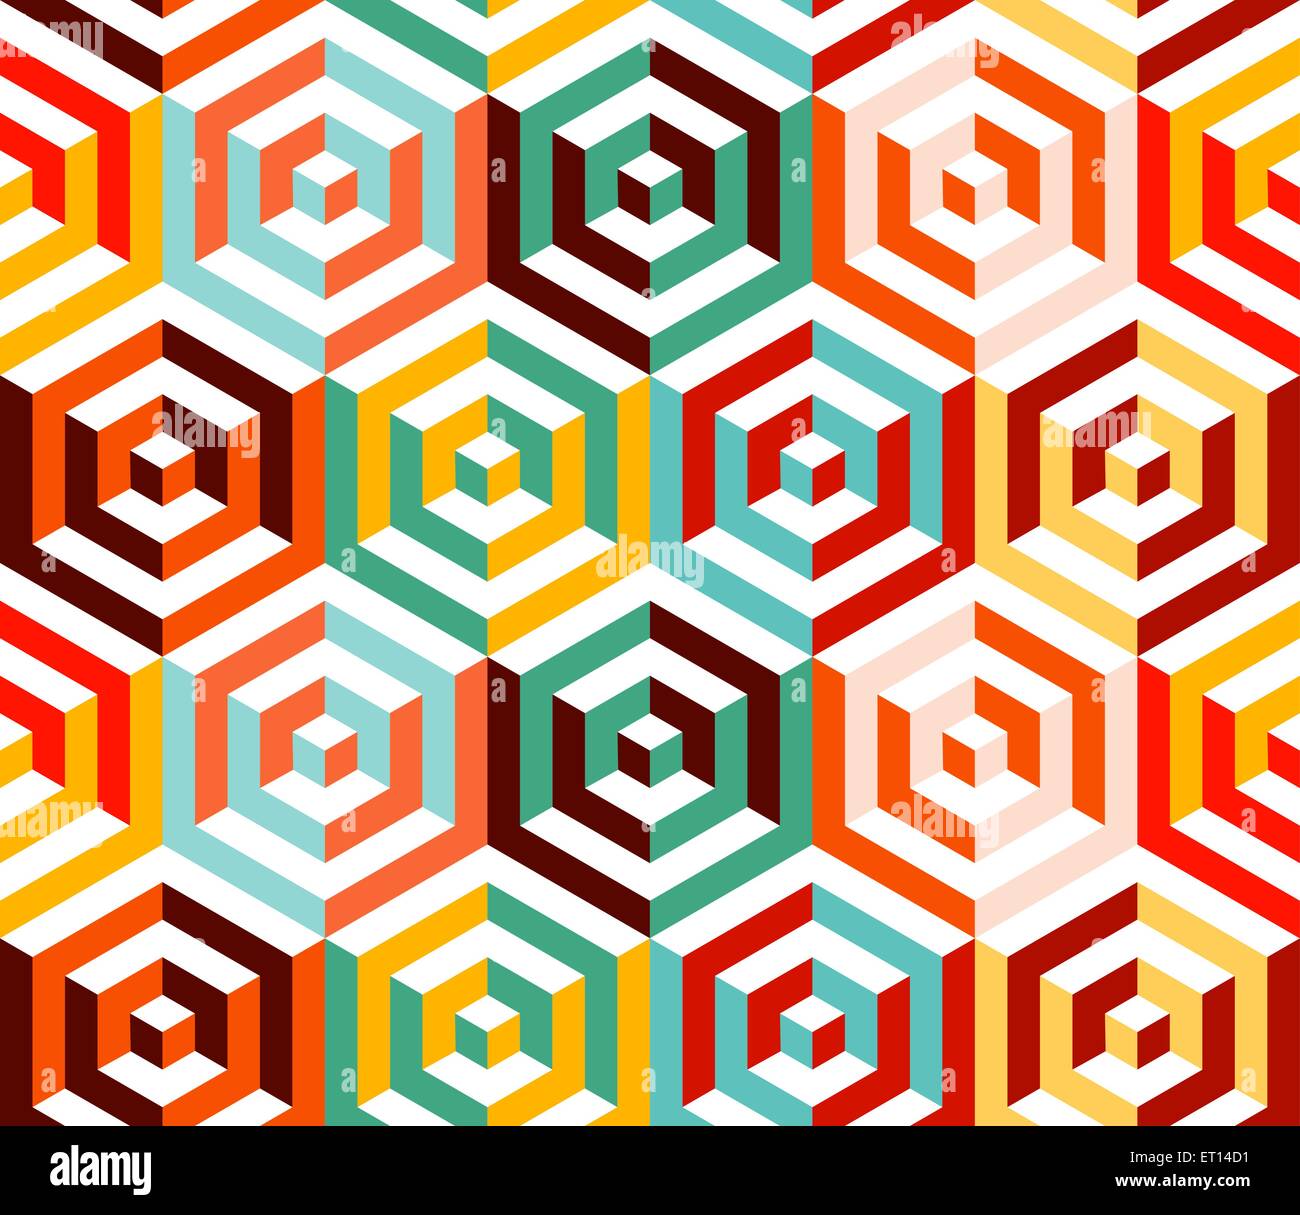 Abstrakte isometrische 3d Retro-bunte sechseckige Formen nahtlose Muster Hintergrund. Ideal für Stoff-Design, Verpackung Papier drucken Stock Vektor